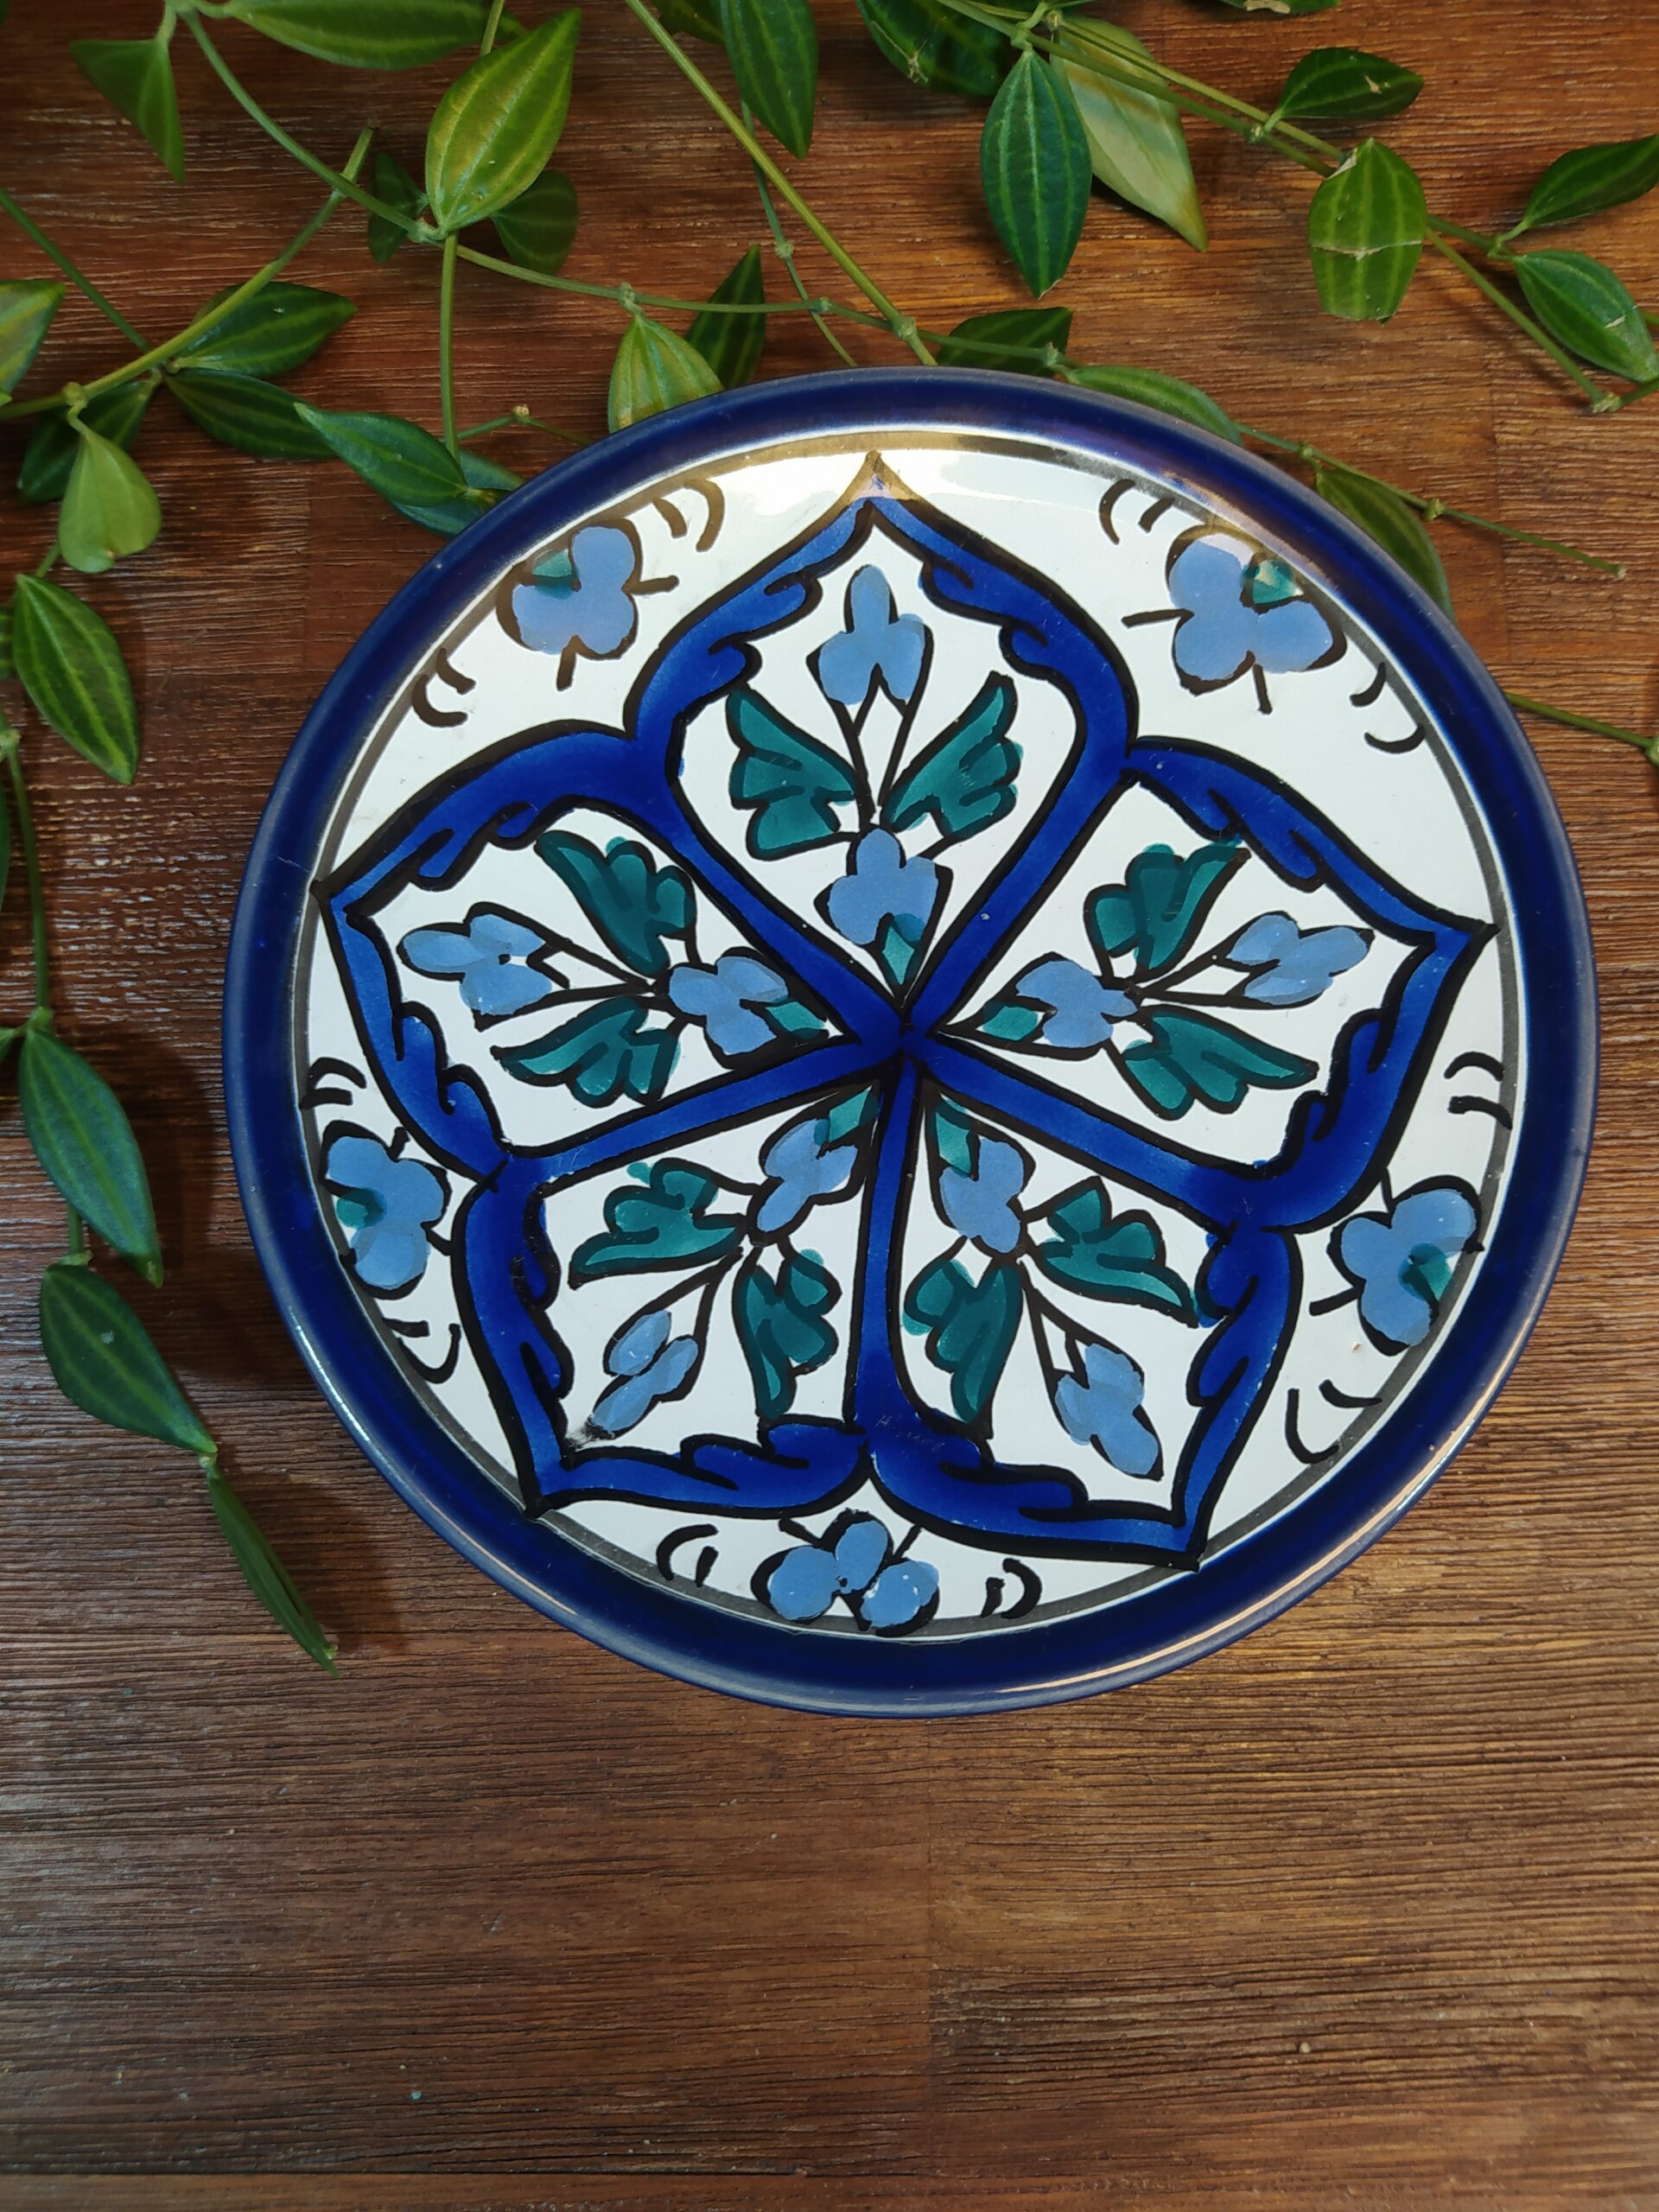 Petite assiette à dessert en terre cuite motifs orientaux et arabesques bleu.